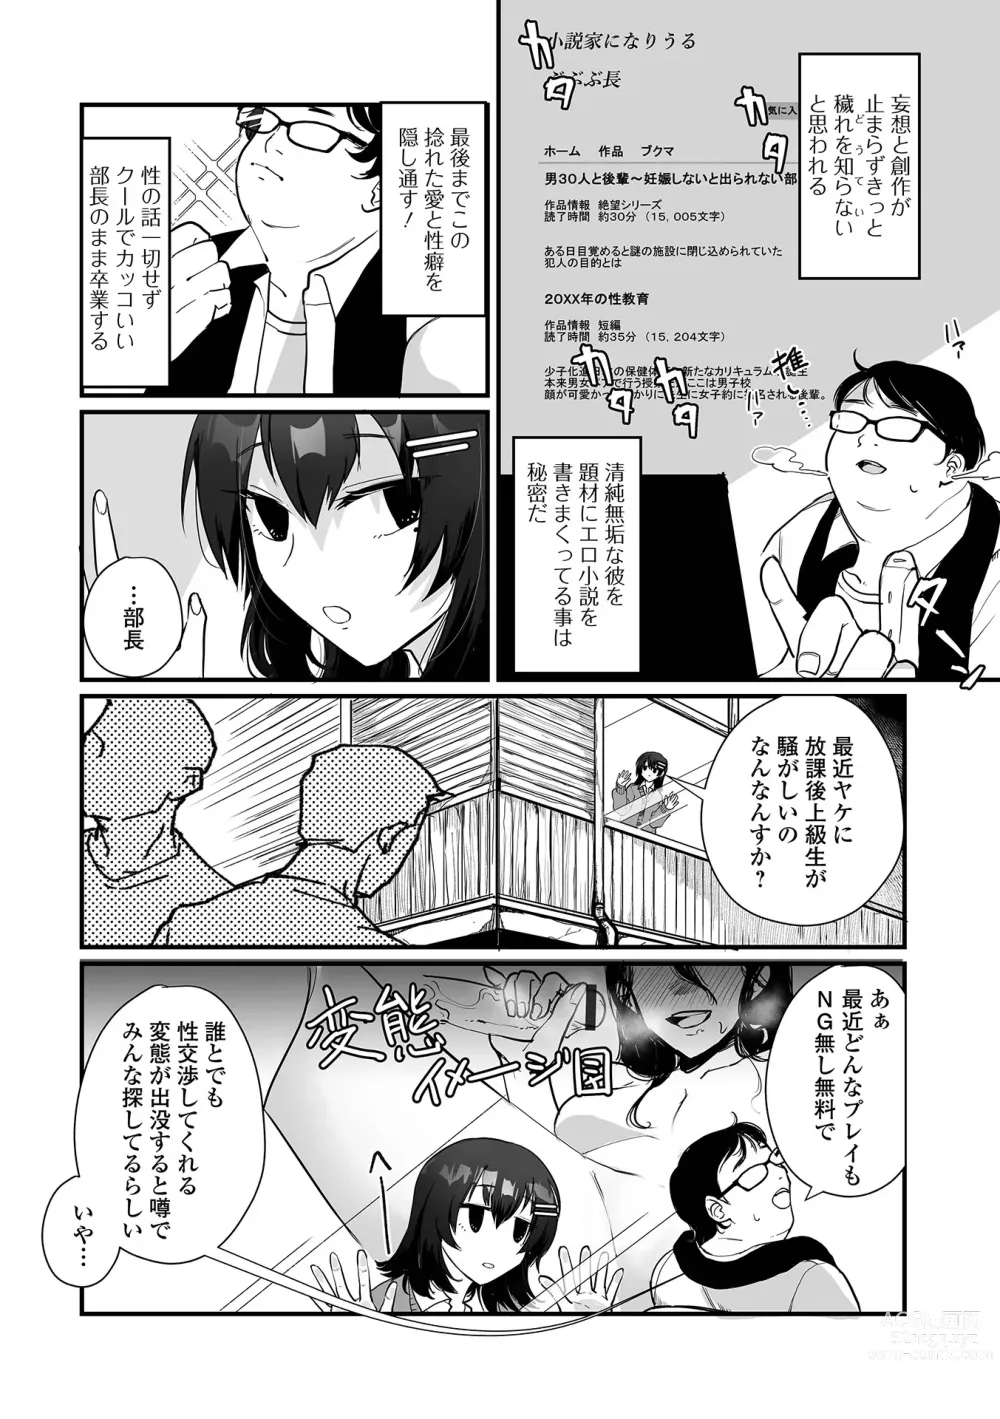 Page 4 of manga Gekkan Web Otoko no Ko-llection! S Vol. 95